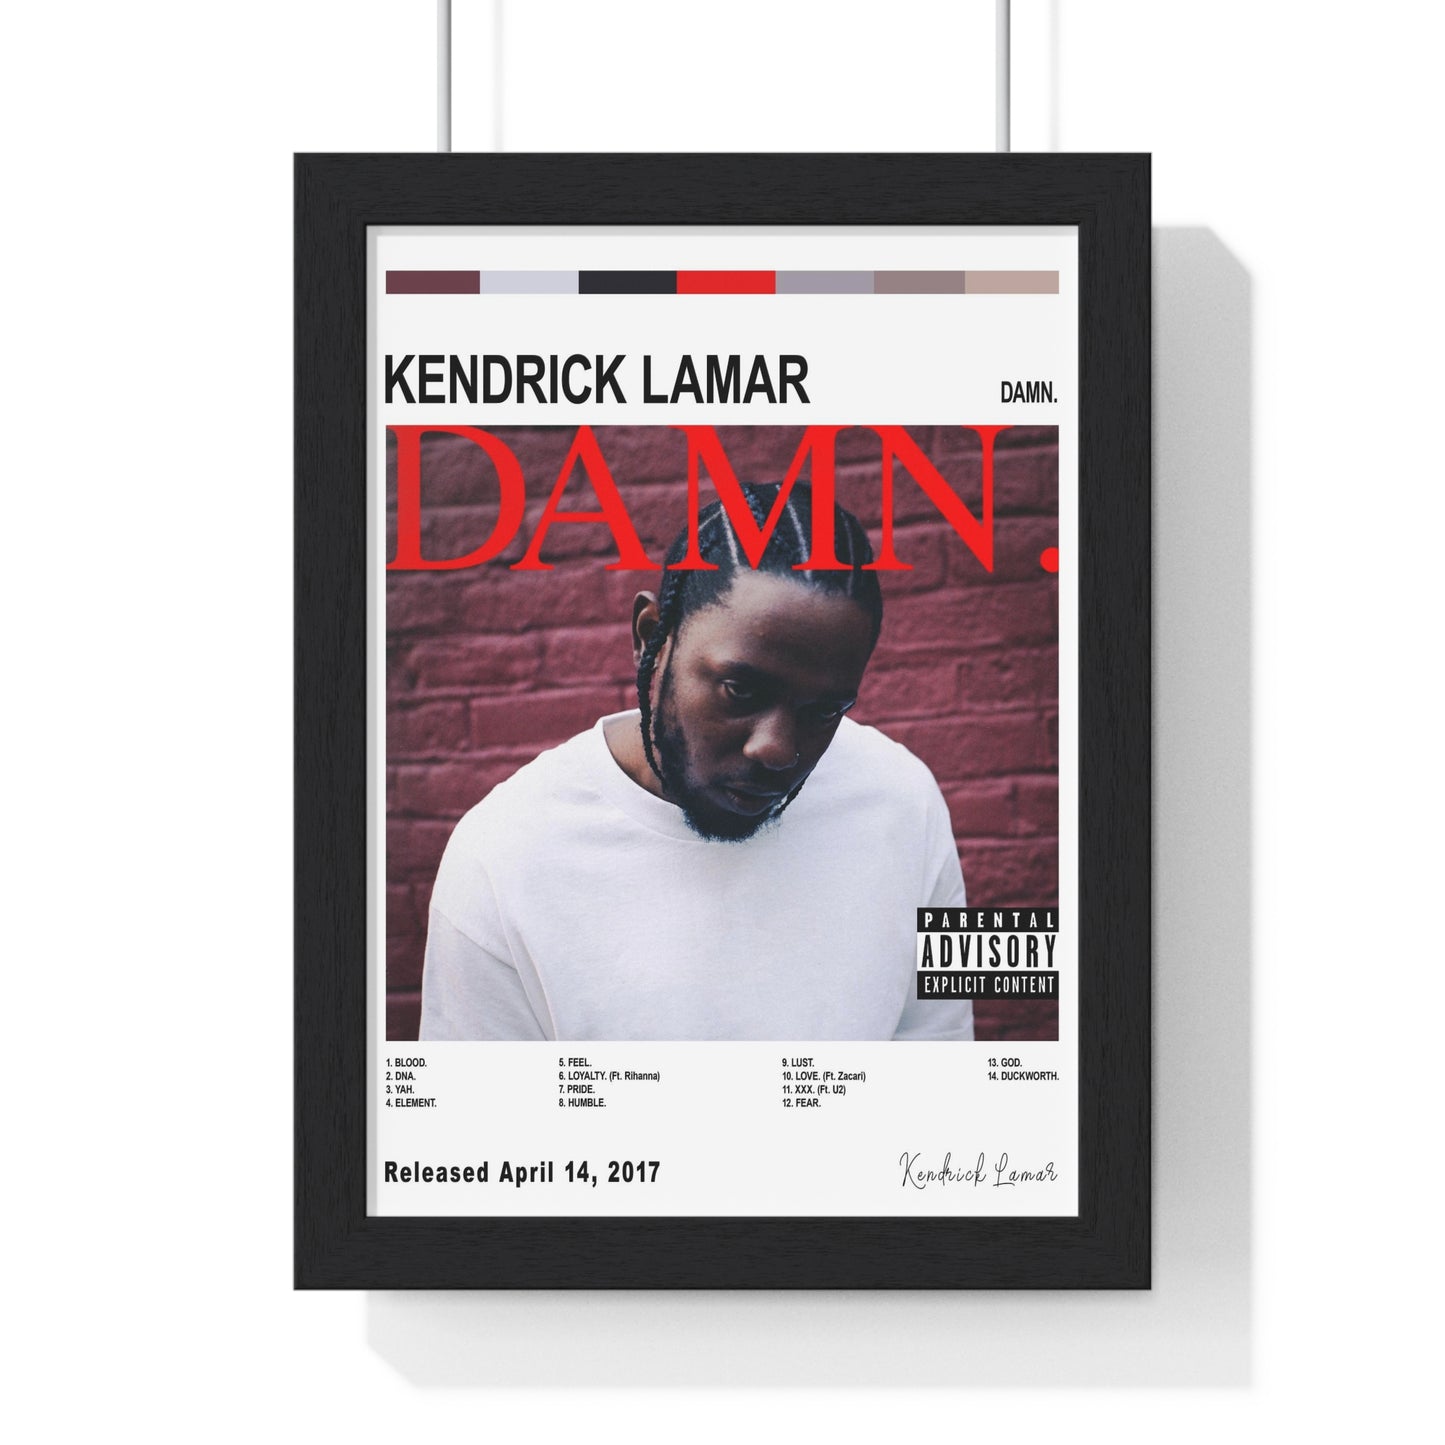 Kendrick Lamar Album Cover Poster